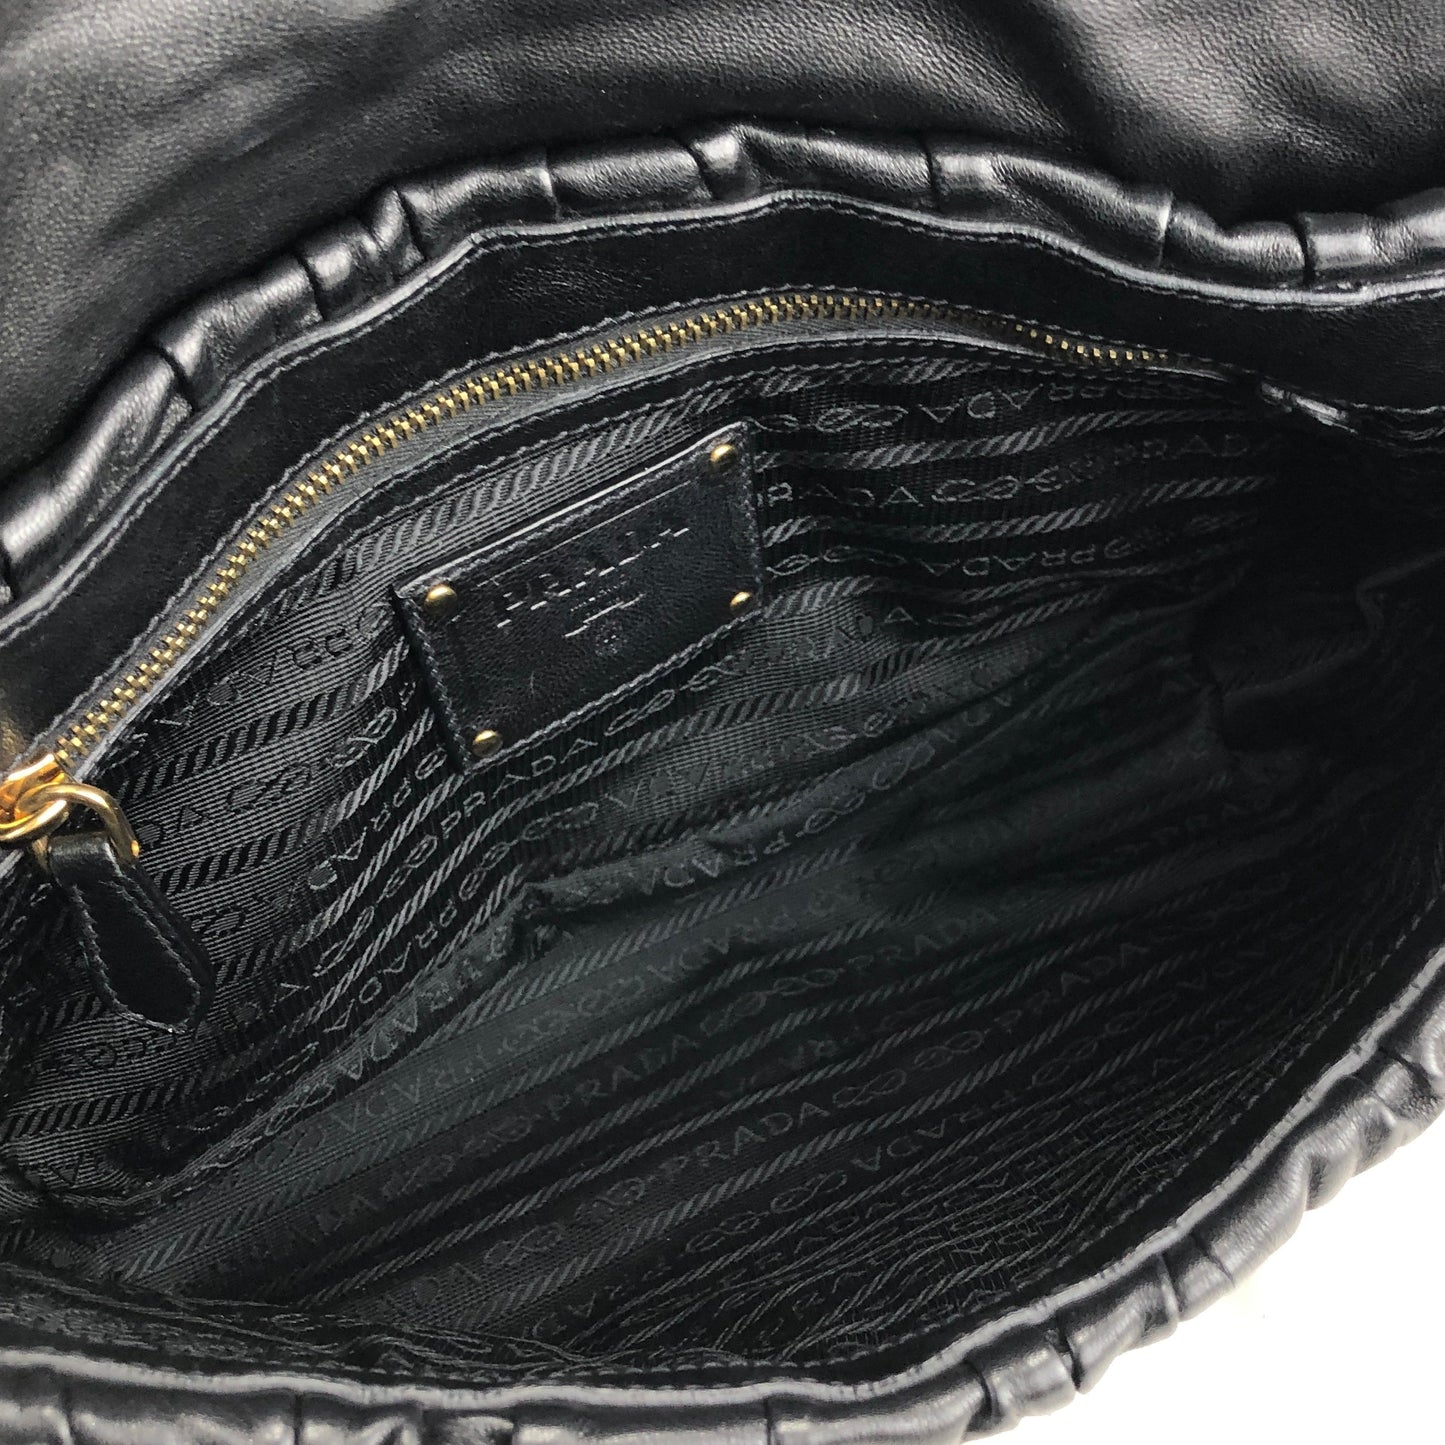 PRADA logo leather plastic chain front lock shoulder bag black vintage old 5abuvk